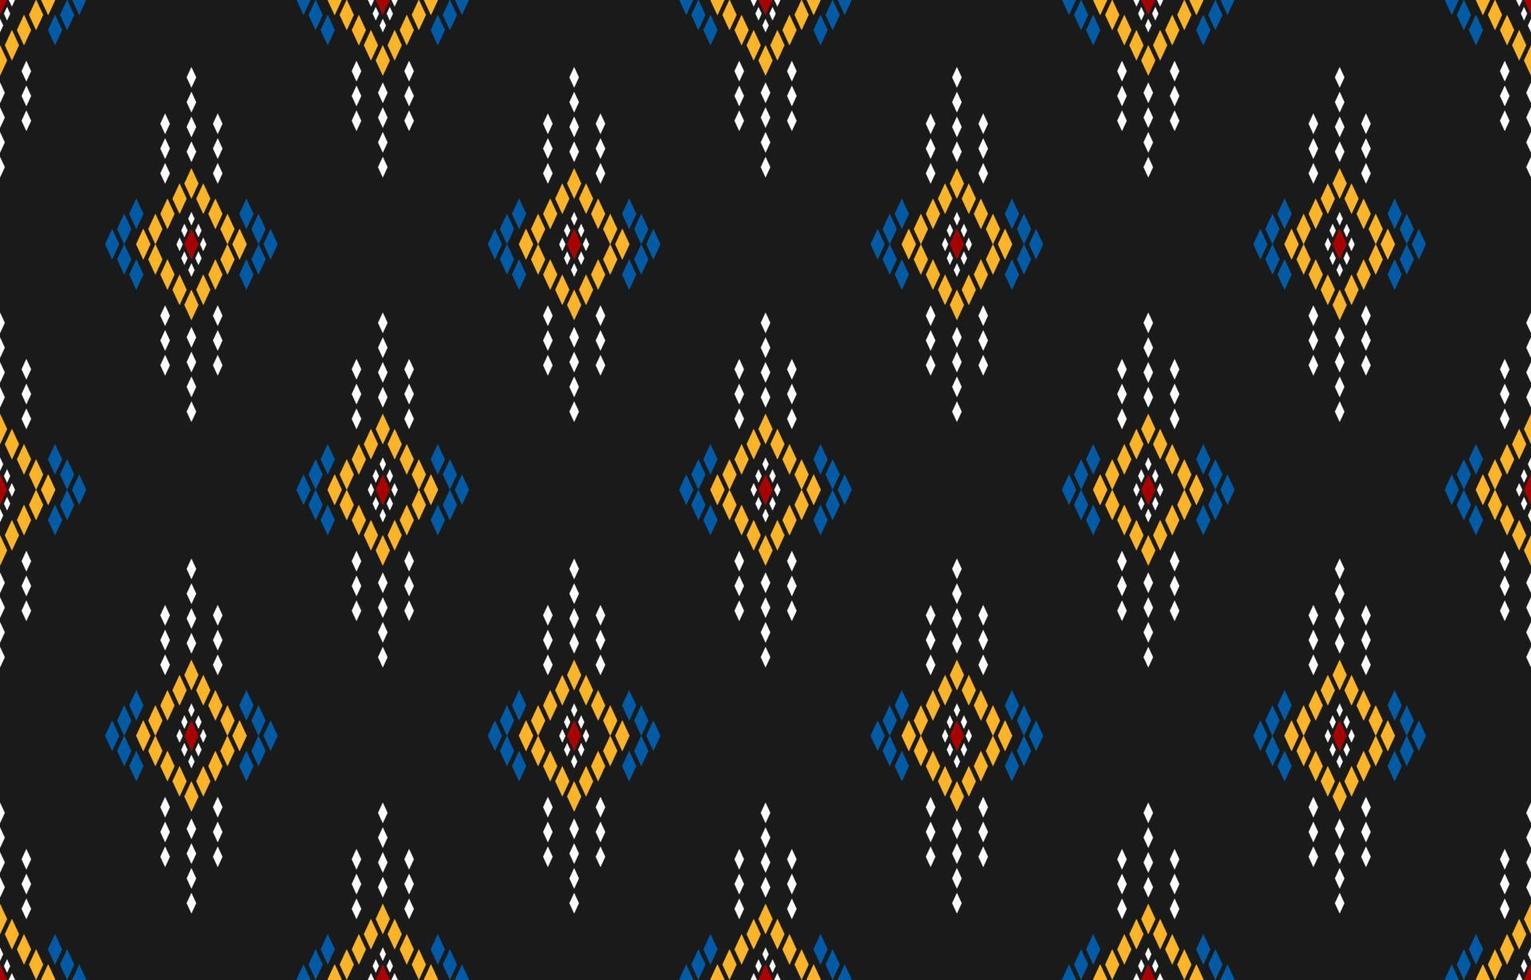 fond de tissu aztèque. motif géométrique ethnique oriental sans couture traditionnel. façon mexicaine. vecteur